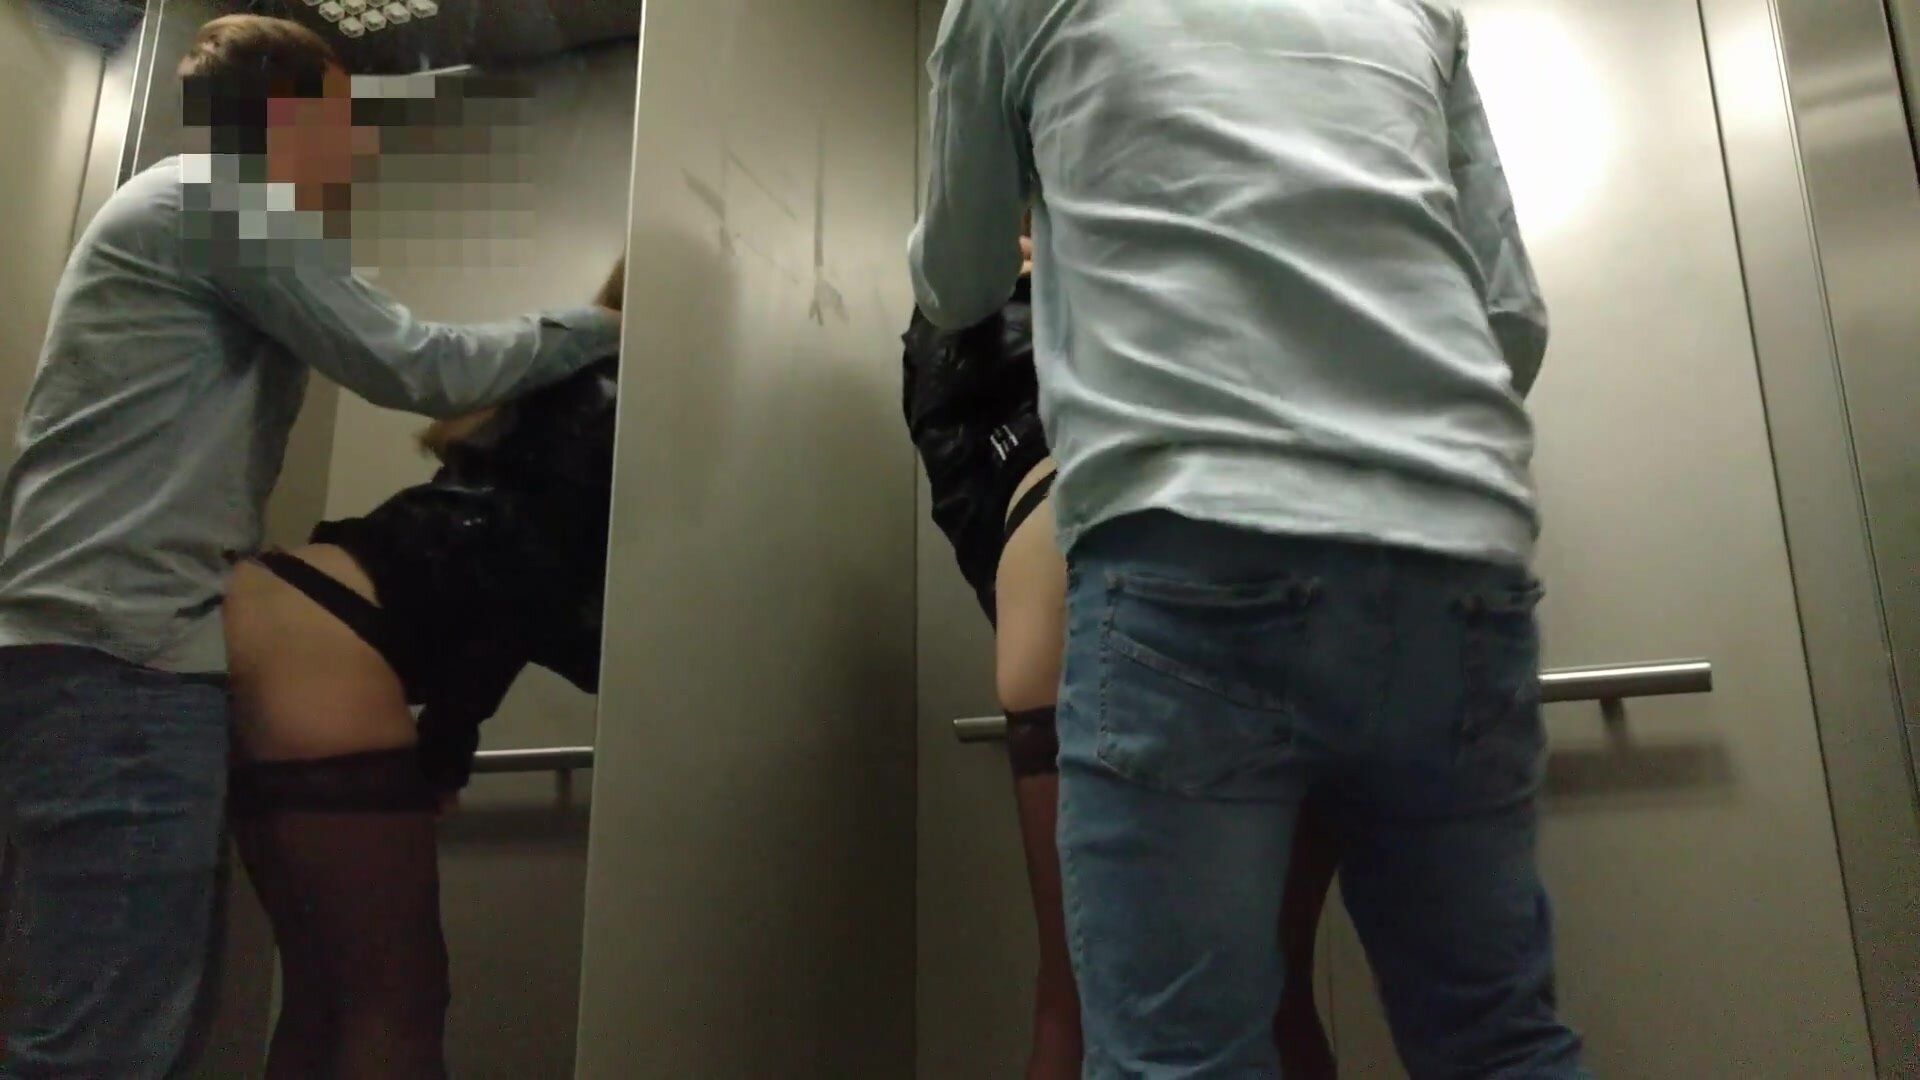 Voyeurstel doet riskante openbare seks in een lift